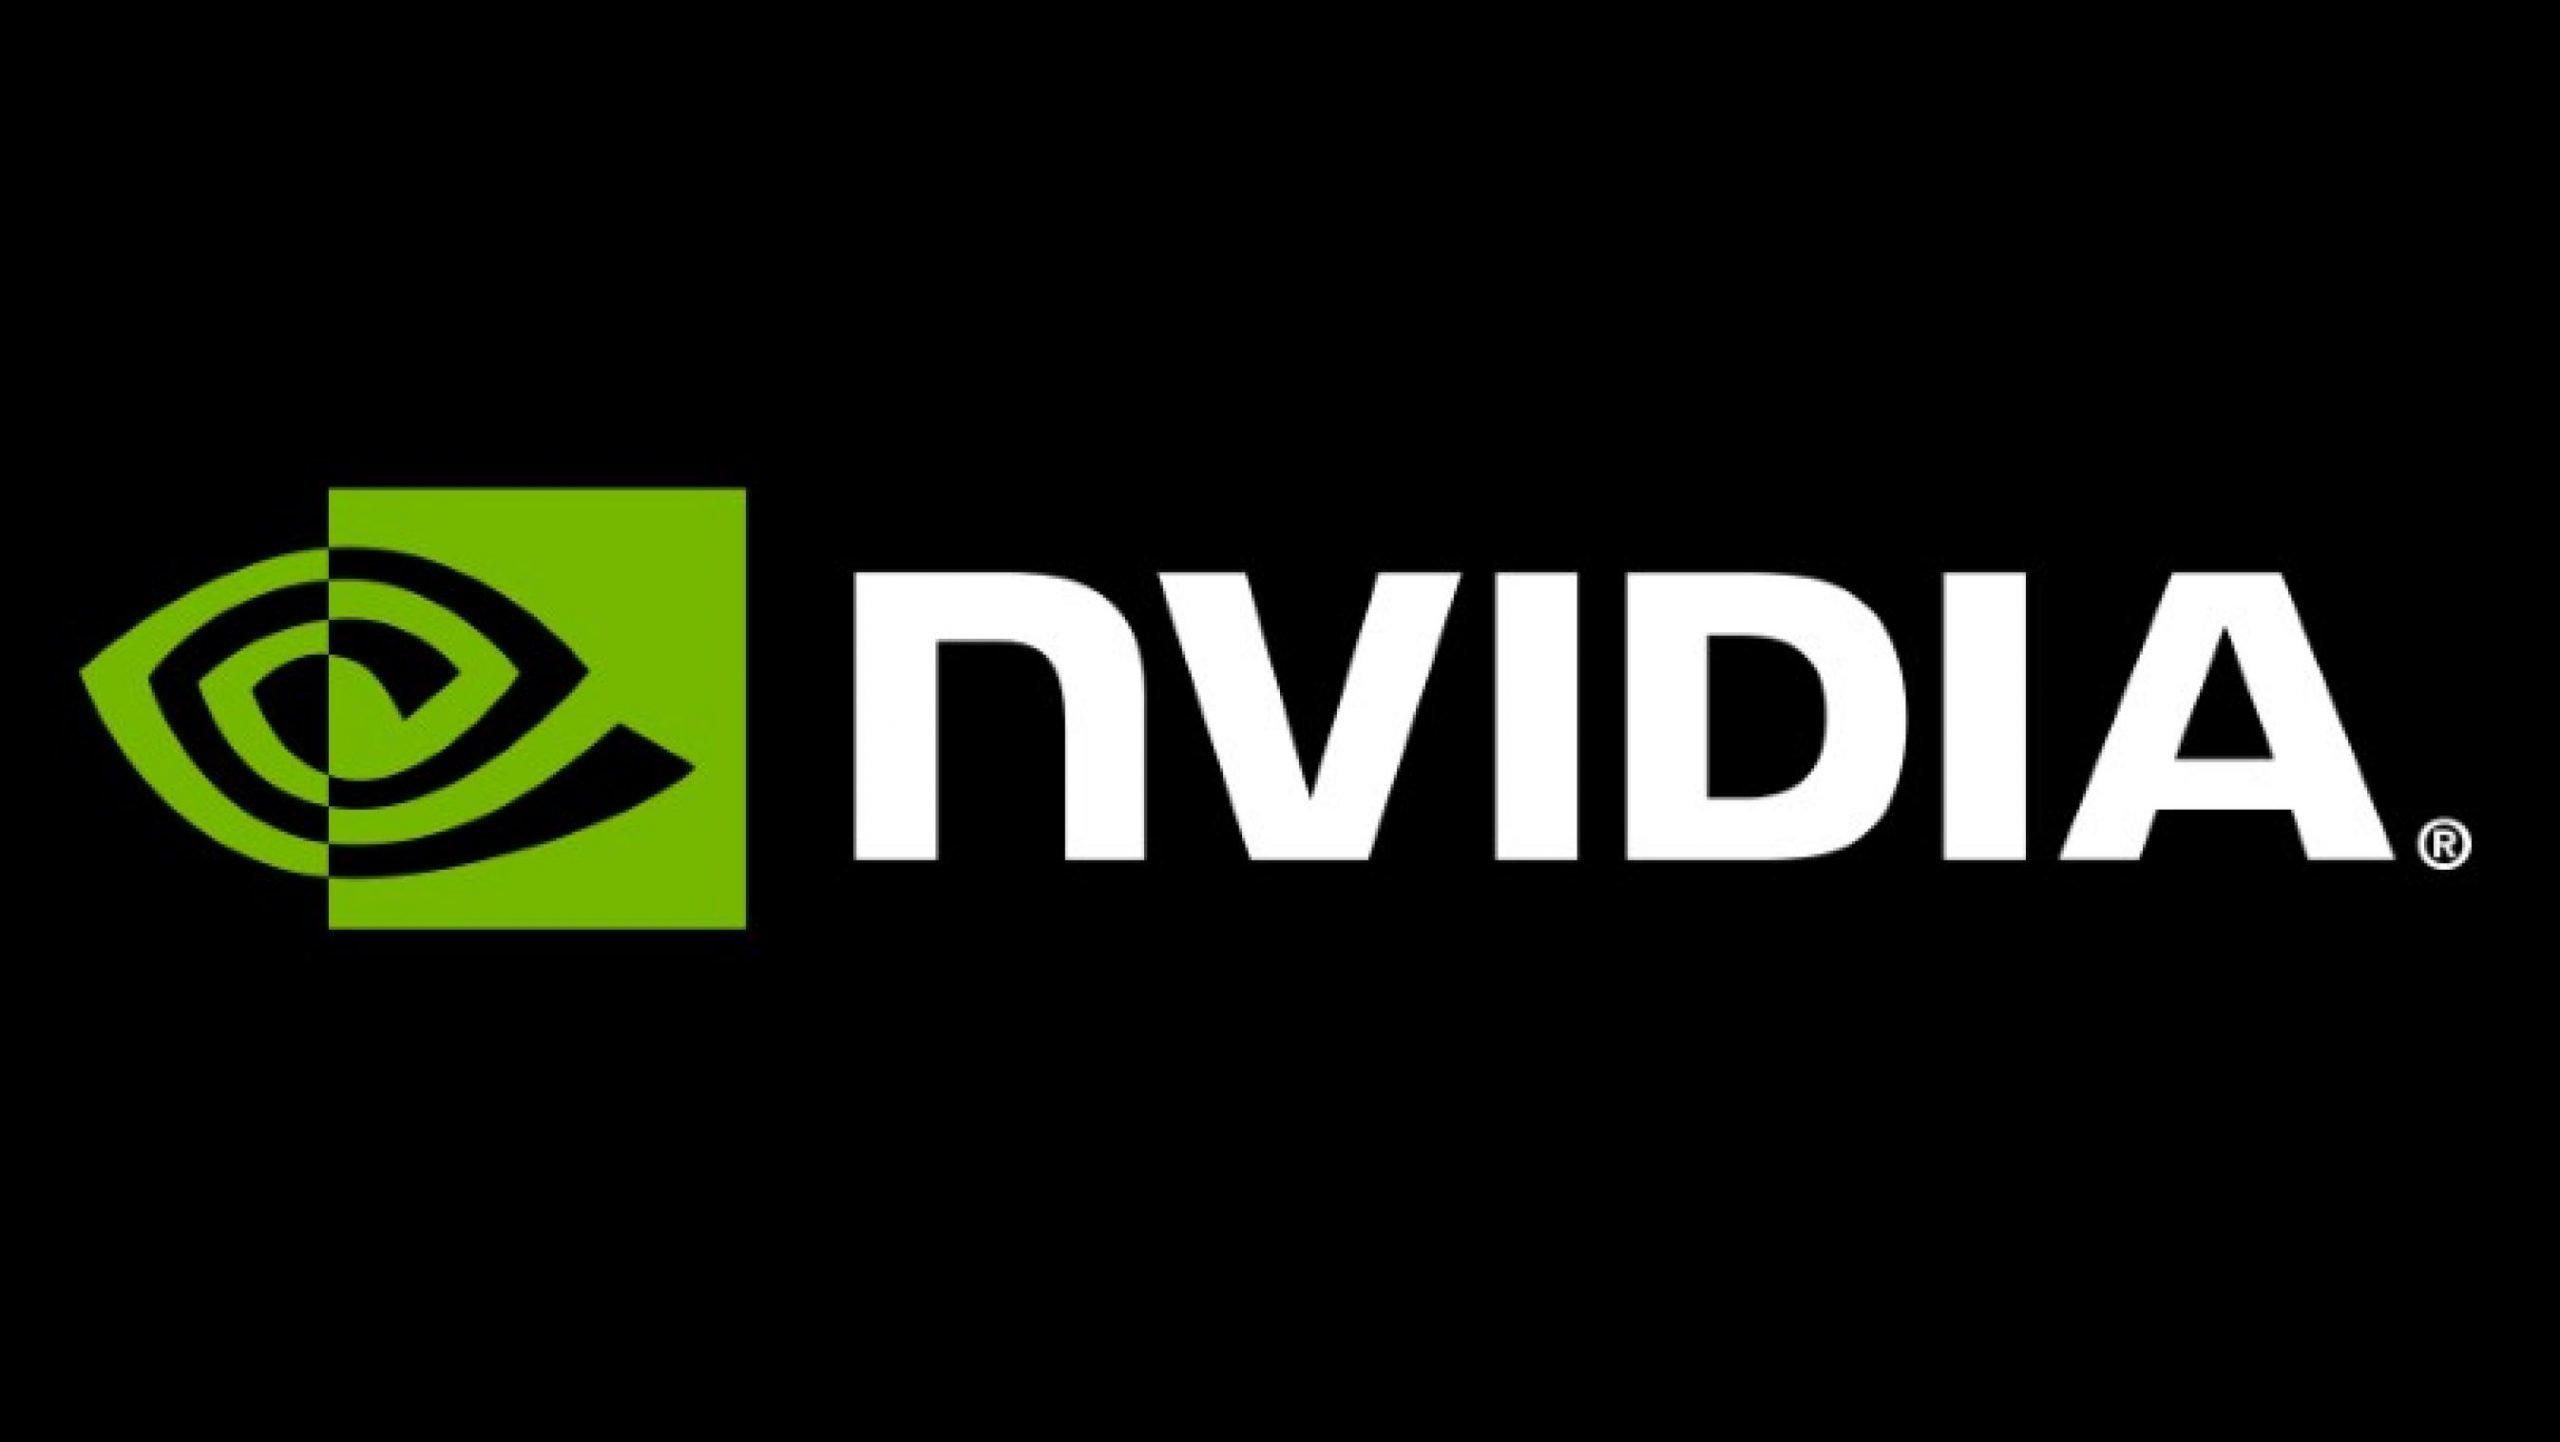 NVIDIA a înregistrat în ianuarie o creştere record a valorii sale de piaţă, susţinută de optimismul legate de AI şi de previziunile pozitive ale analiştilor